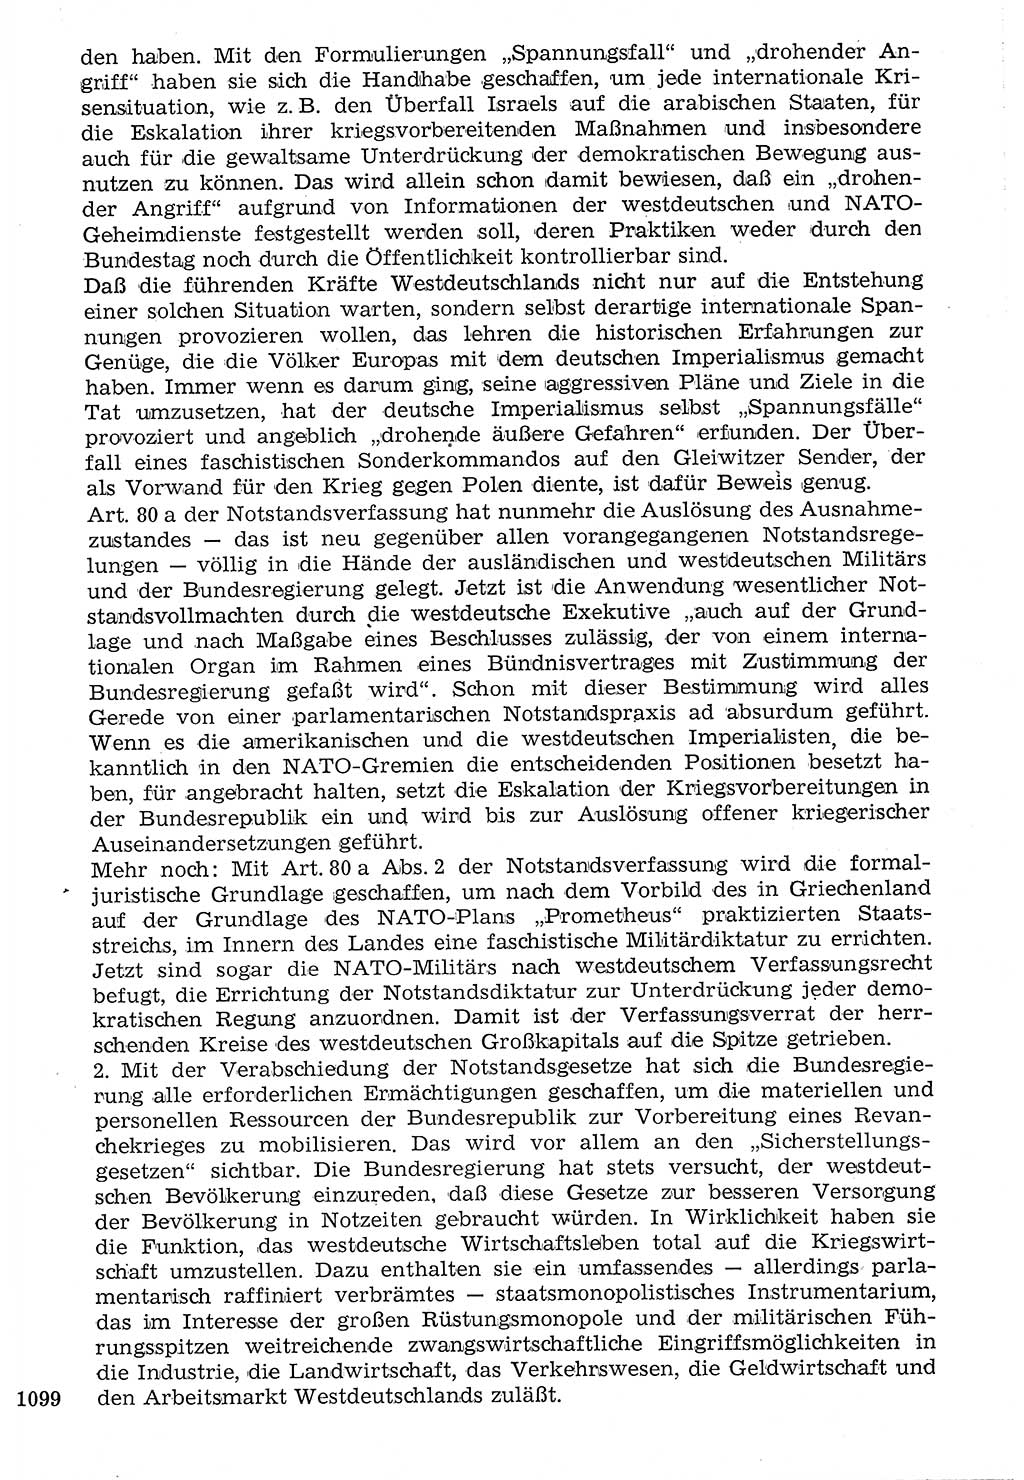 Staat und Recht (StuR), 17. Jahrgang [Deutsche Demokratische Republik (DDR)] 1968, Seite 1099 (StuR DDR 1968, S. 1099)